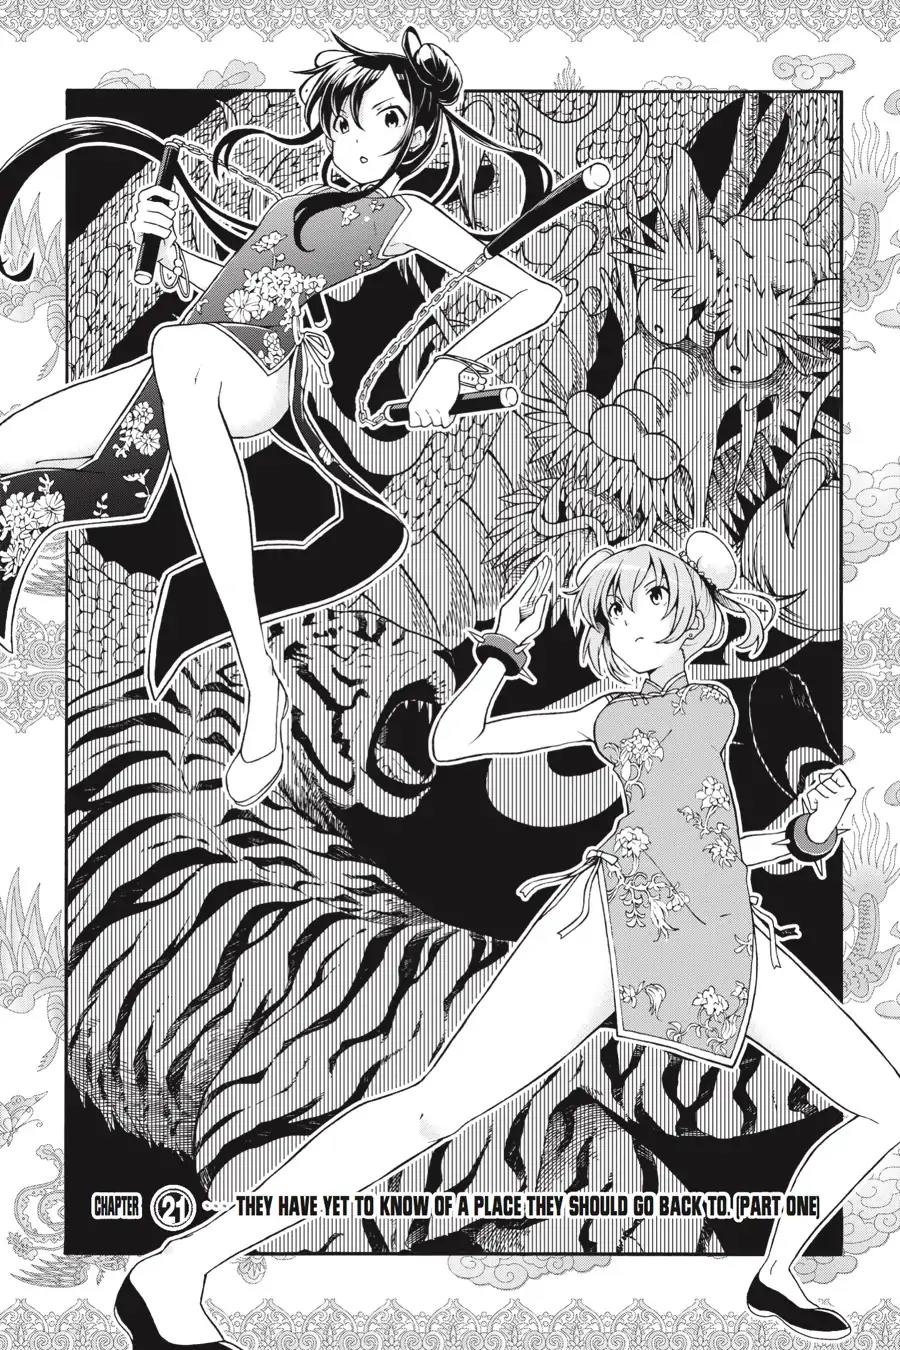 Yahari Ore no Seishun Rabukome wa Machigatte Iru. @ Comic Vol.4 Chapter 21: